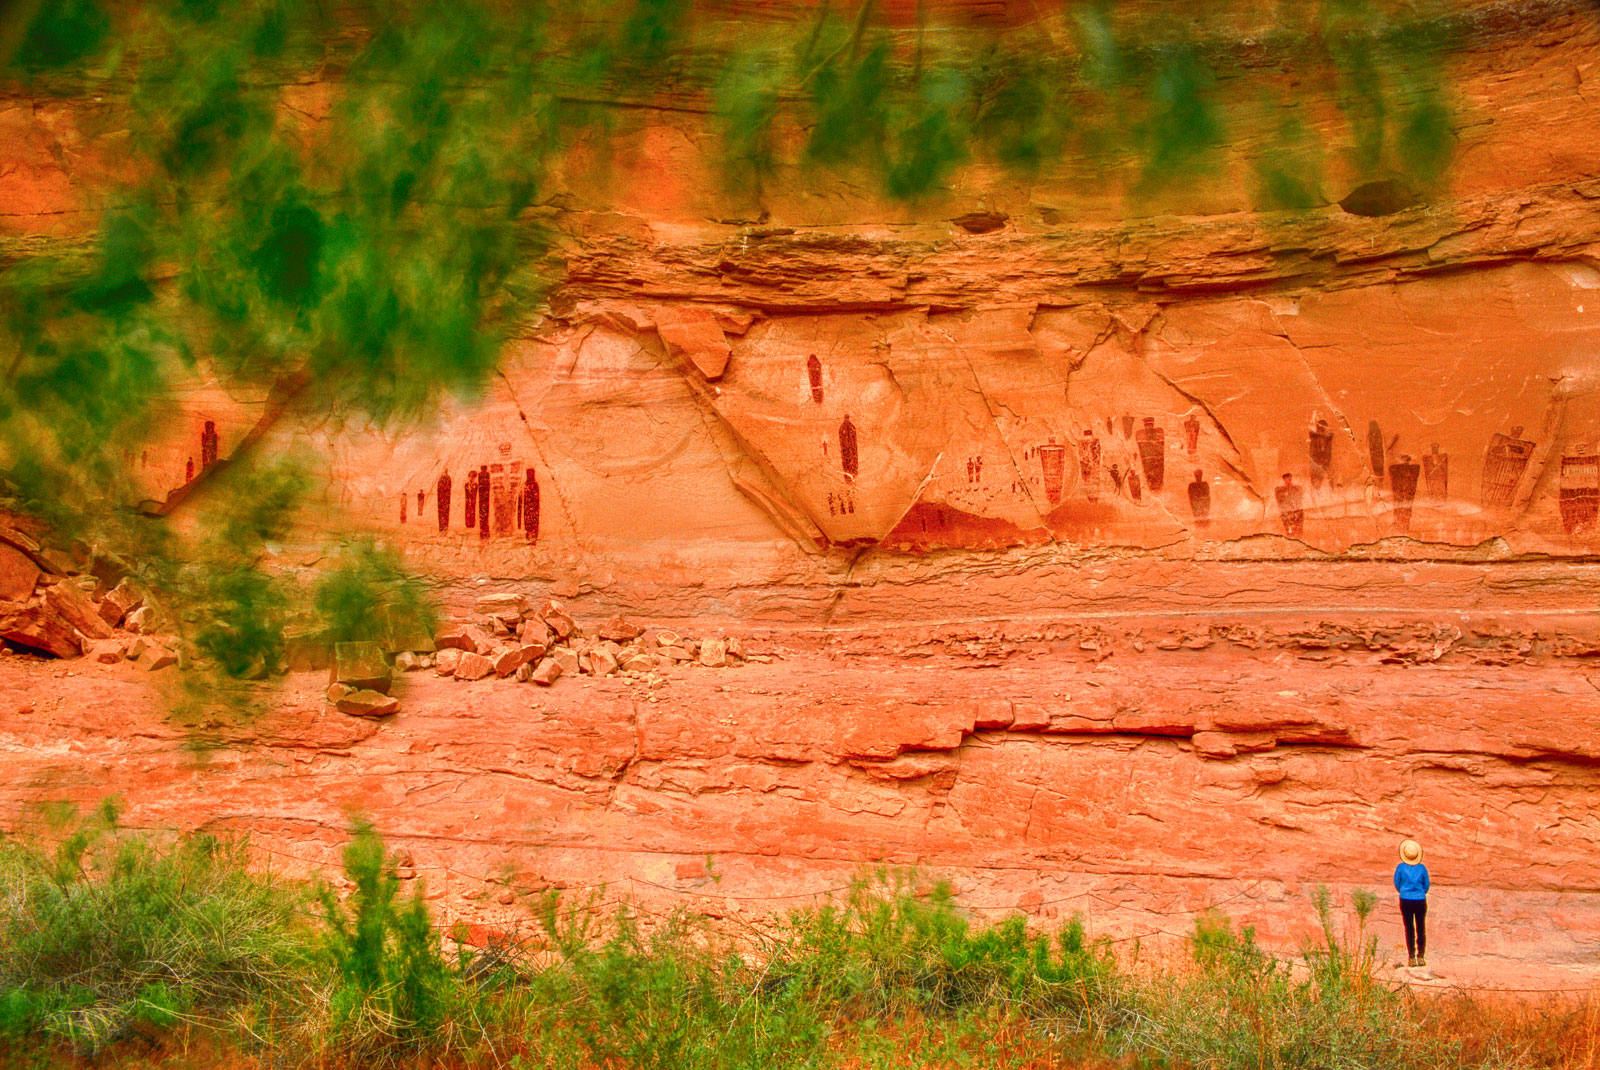 Visitor looking at rock art, Horseshoe Canyon, Canyonlands National Park, Utah, USA